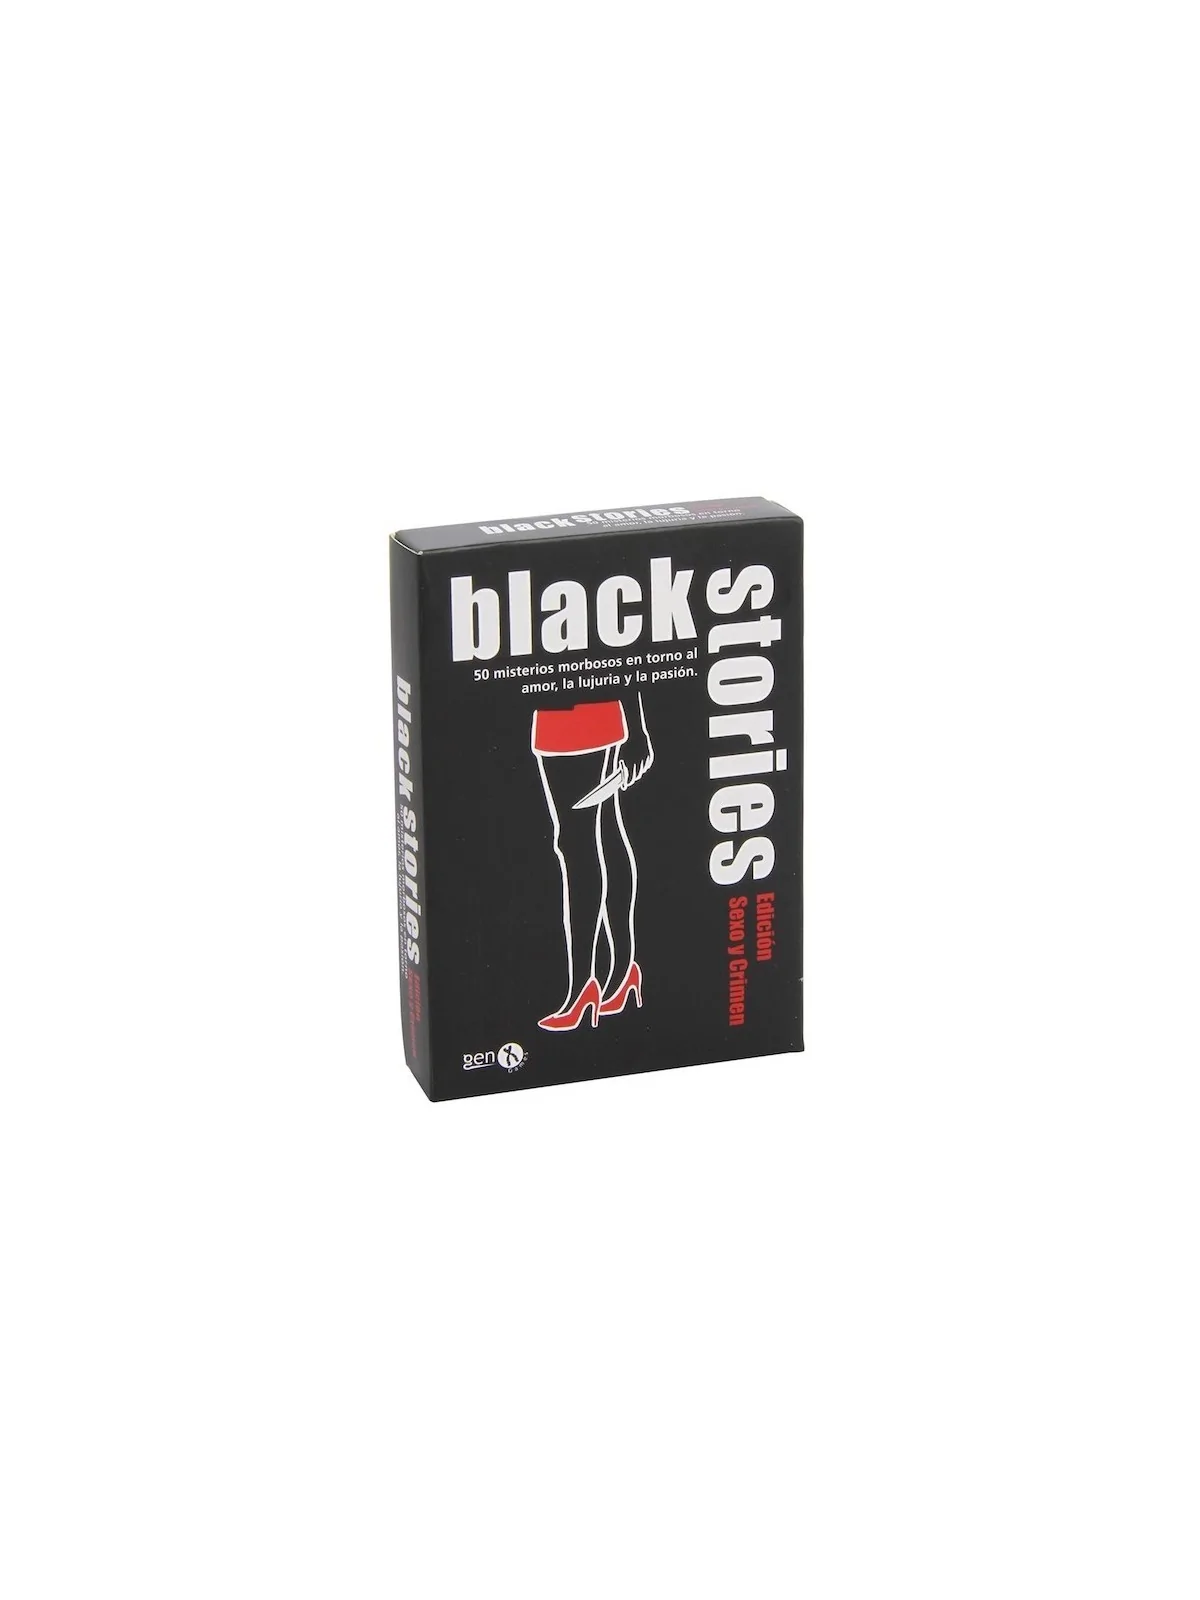 Comprar Black Stories Sexo y Crimen barato al mejor precio 11,65 € de 